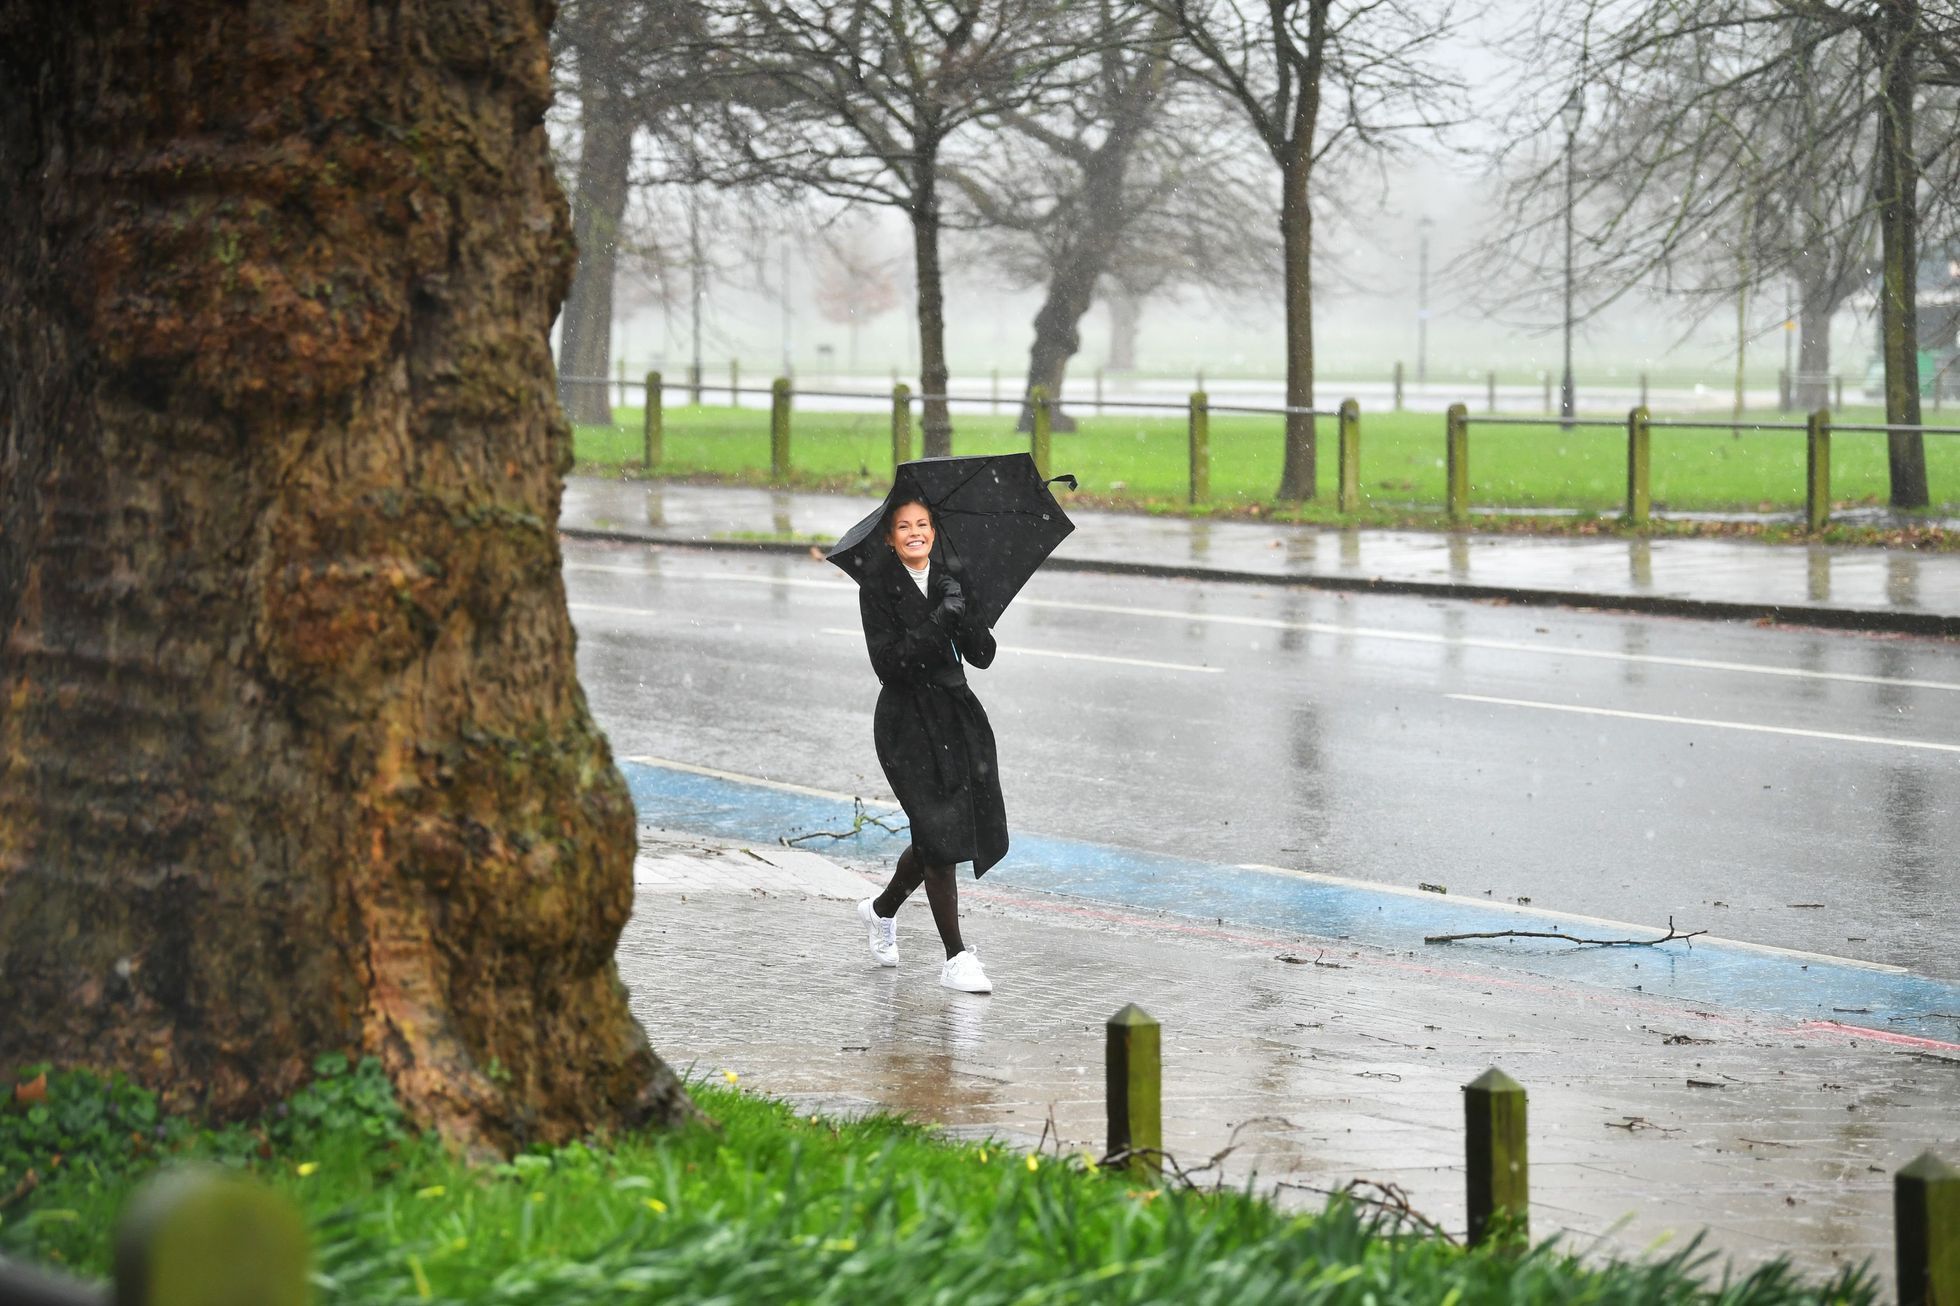 Prudký déšť a vichr zasáhl také jižní Londýn. Tato žena ale bere zhoršené počasí s úsměvem.